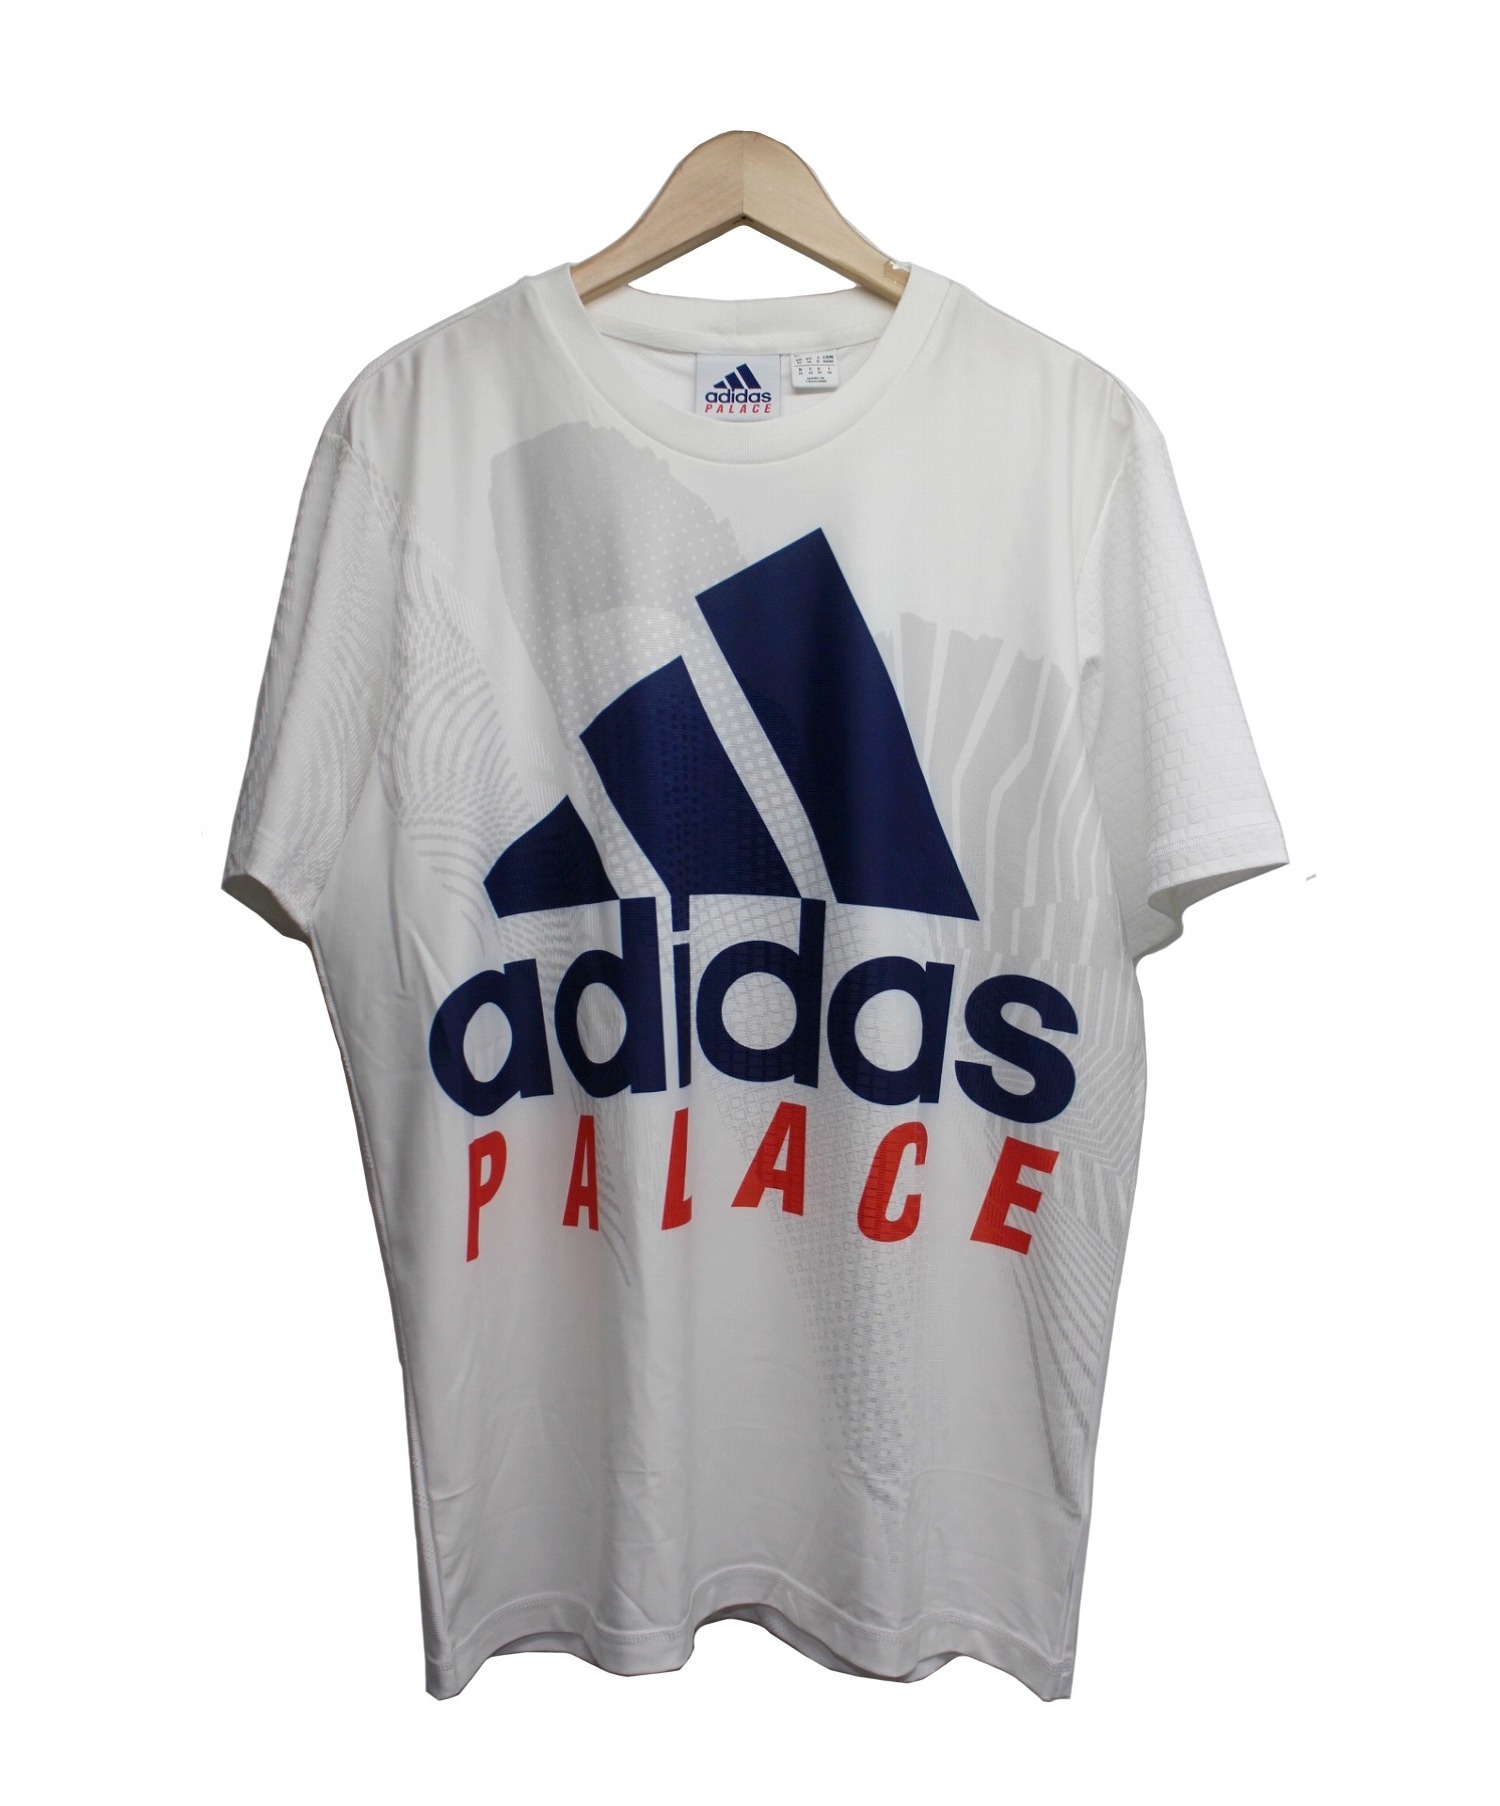 中古 古着通販 Palace Adidas パレス アディダス グラフィックtシャツ ホワイト サイズ J 0 ブランド 古着通販 トレファク公式 Trefac Fashion